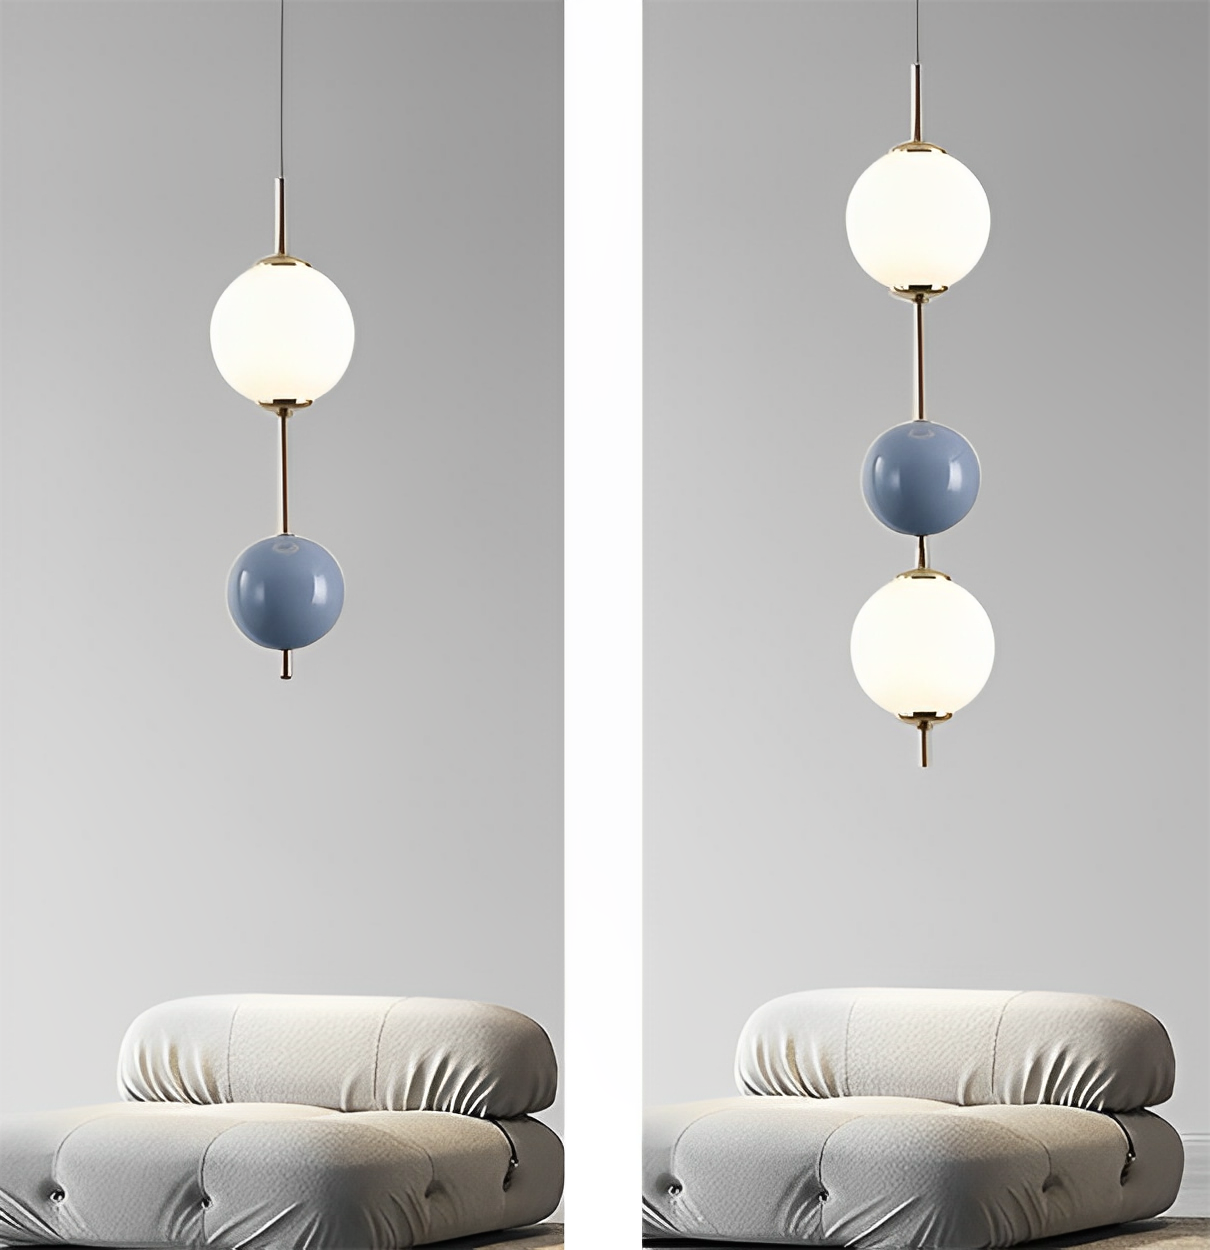 https://www.wonledlight.com/hardware-chandelier-and-pendant-lamp/